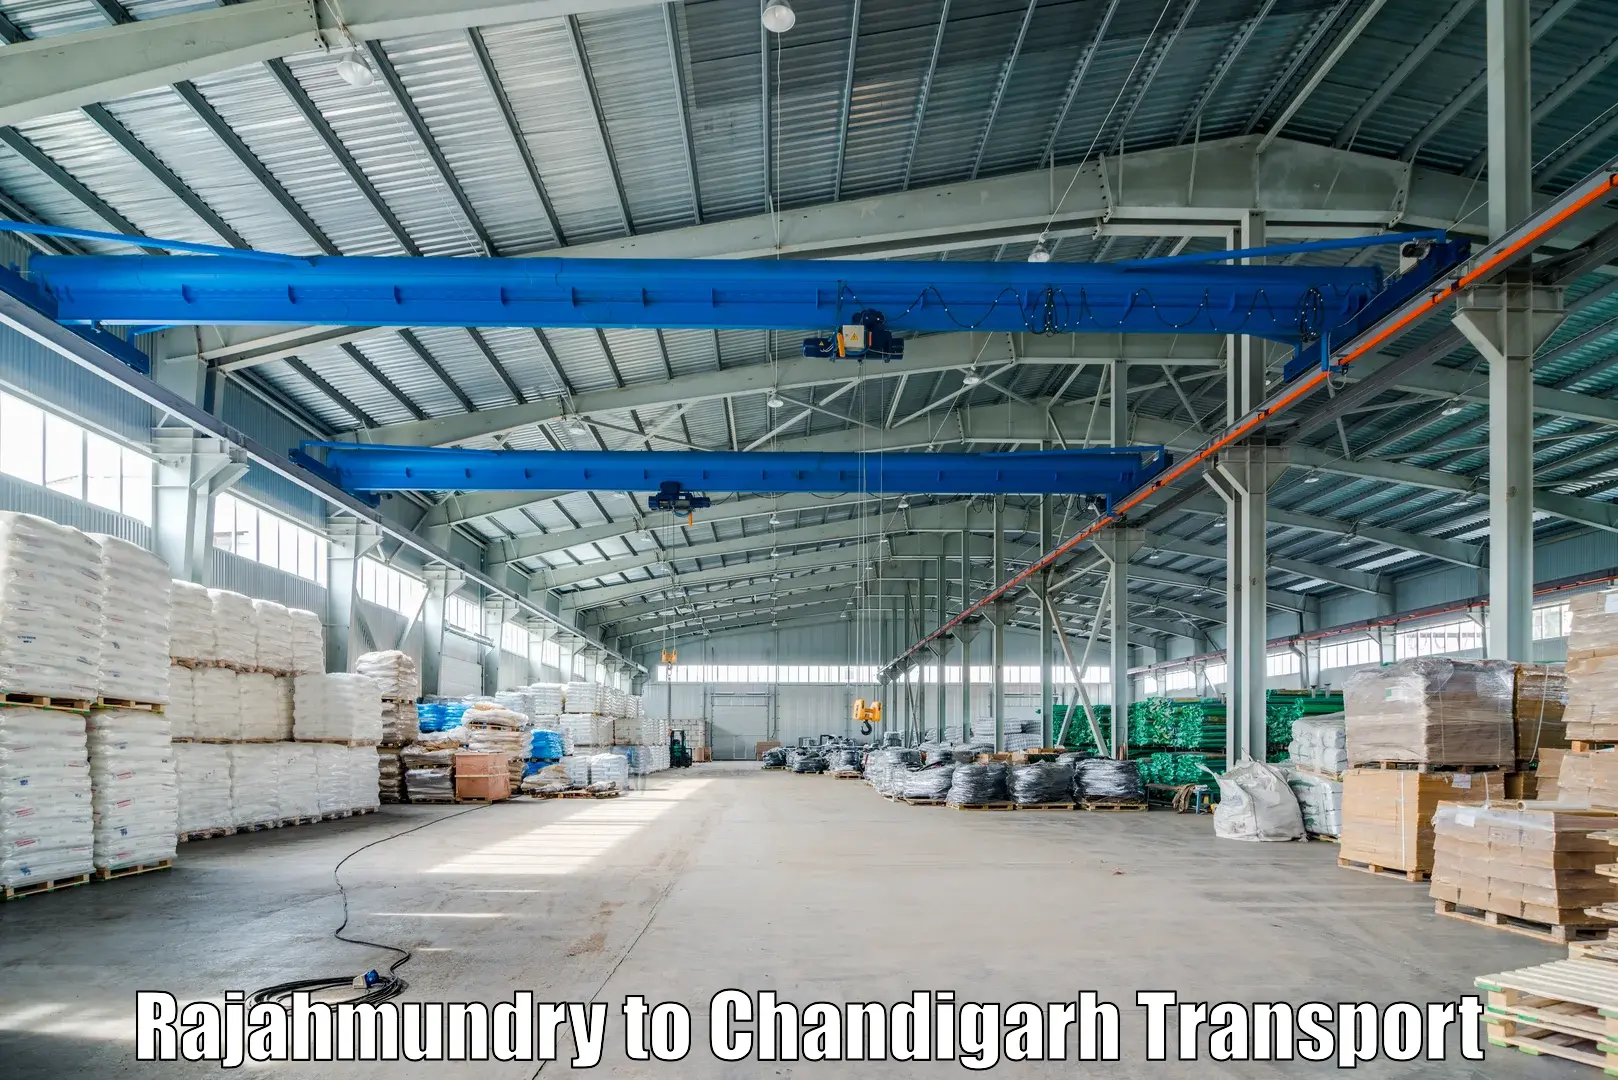 Online transport service Rajahmundry to Chandigarh